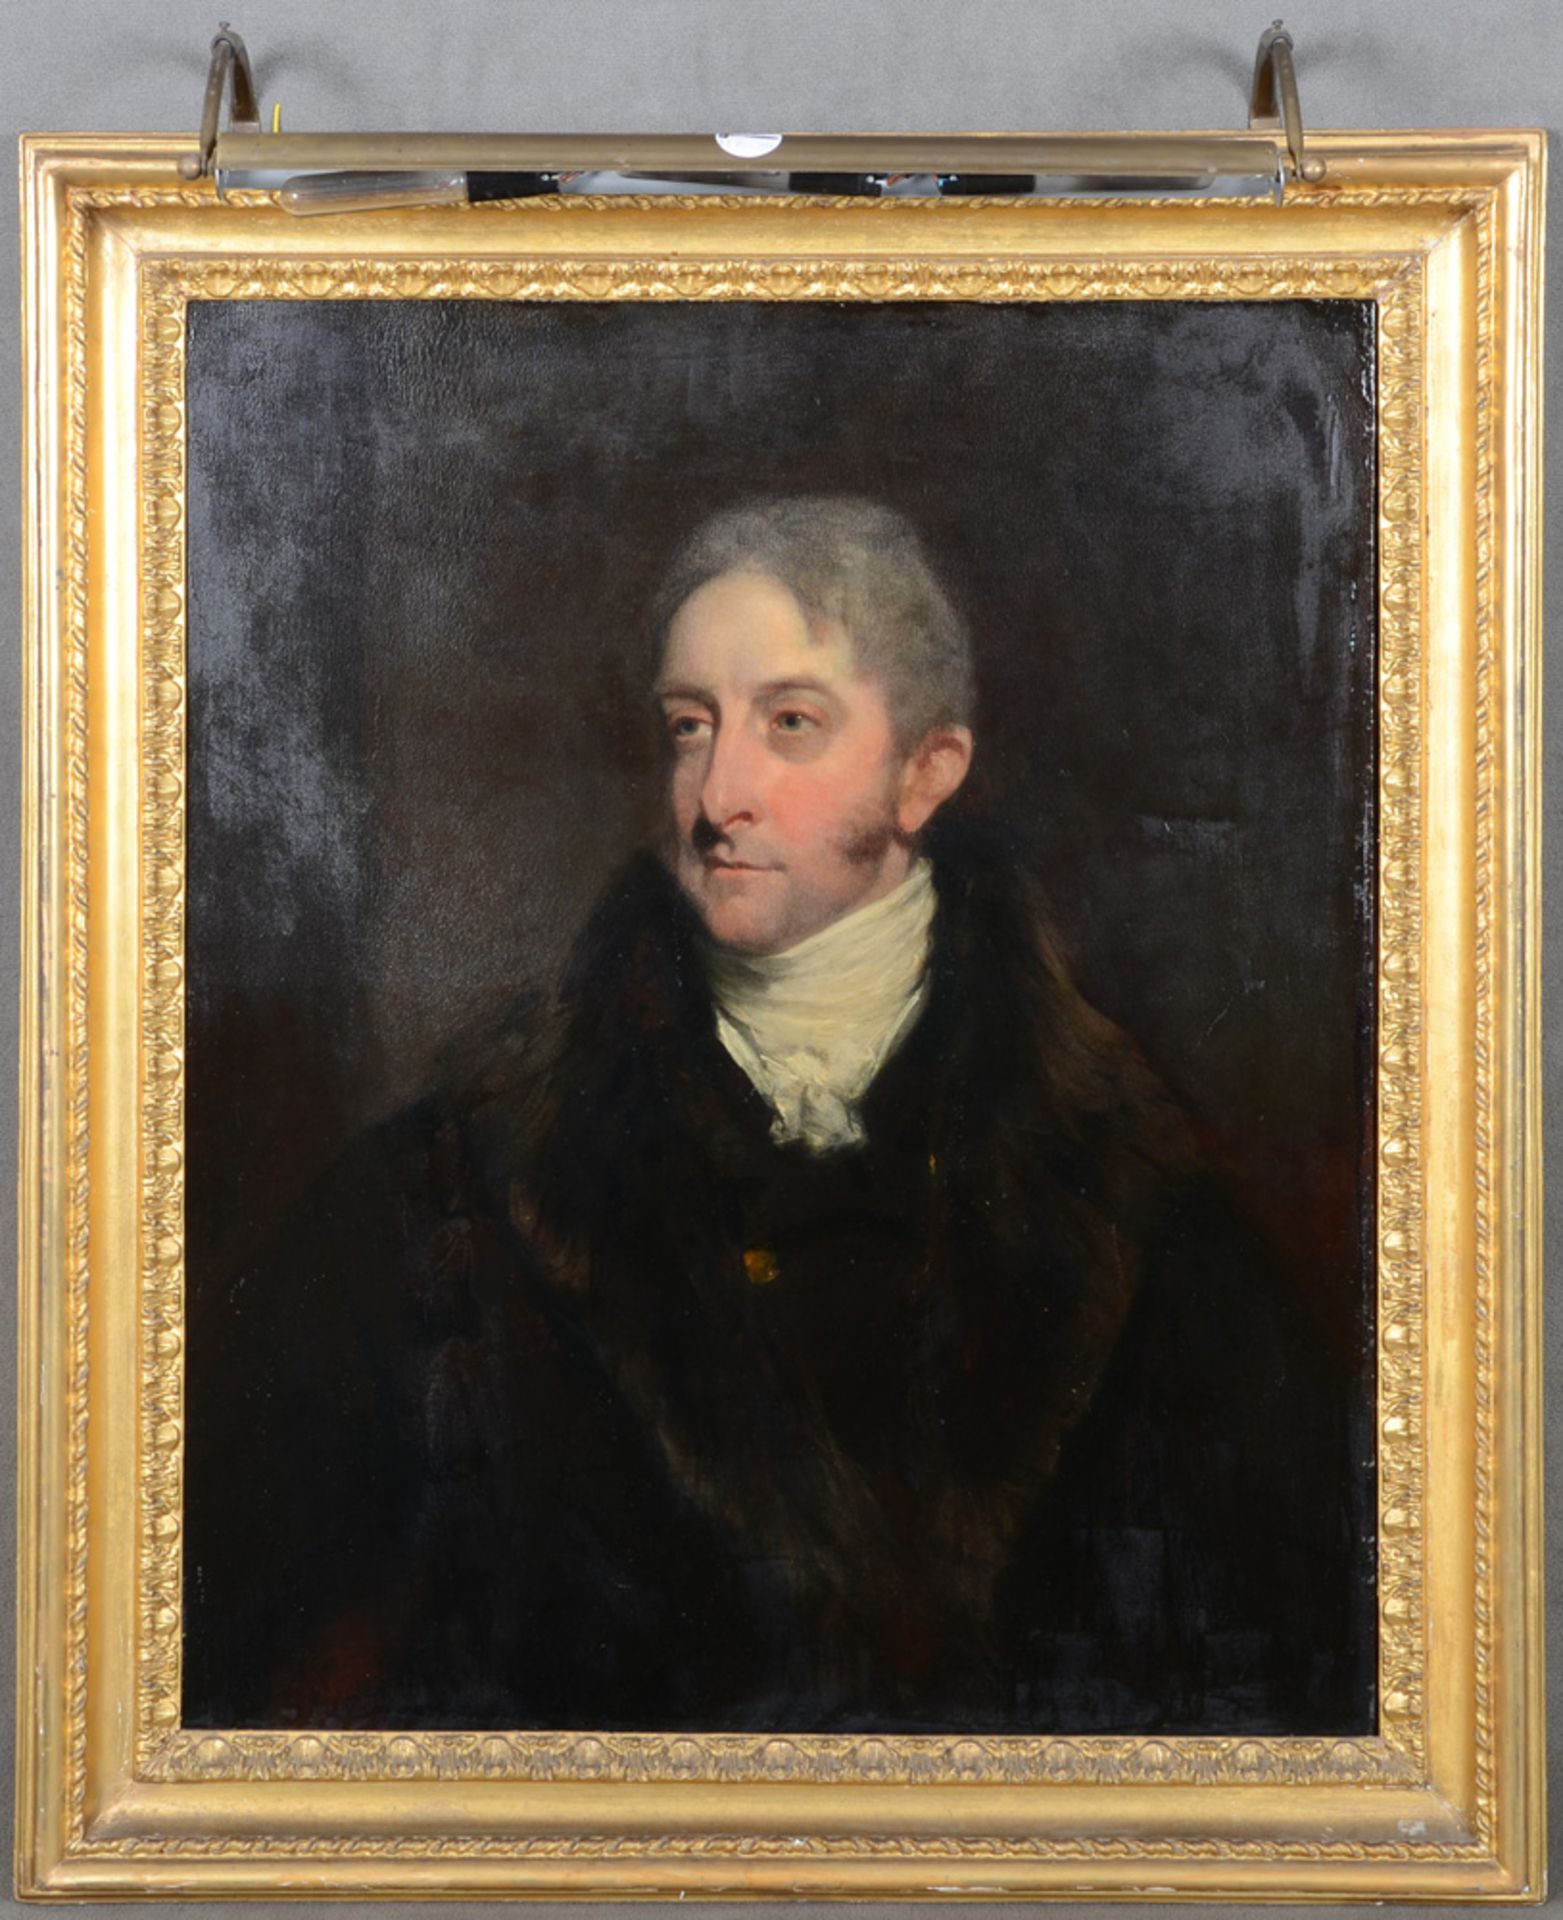 William Owen (1769-1825). Porträt von Cropley Ashley-Cooper, 6th Earl of Shaftesbury (1768-1851).